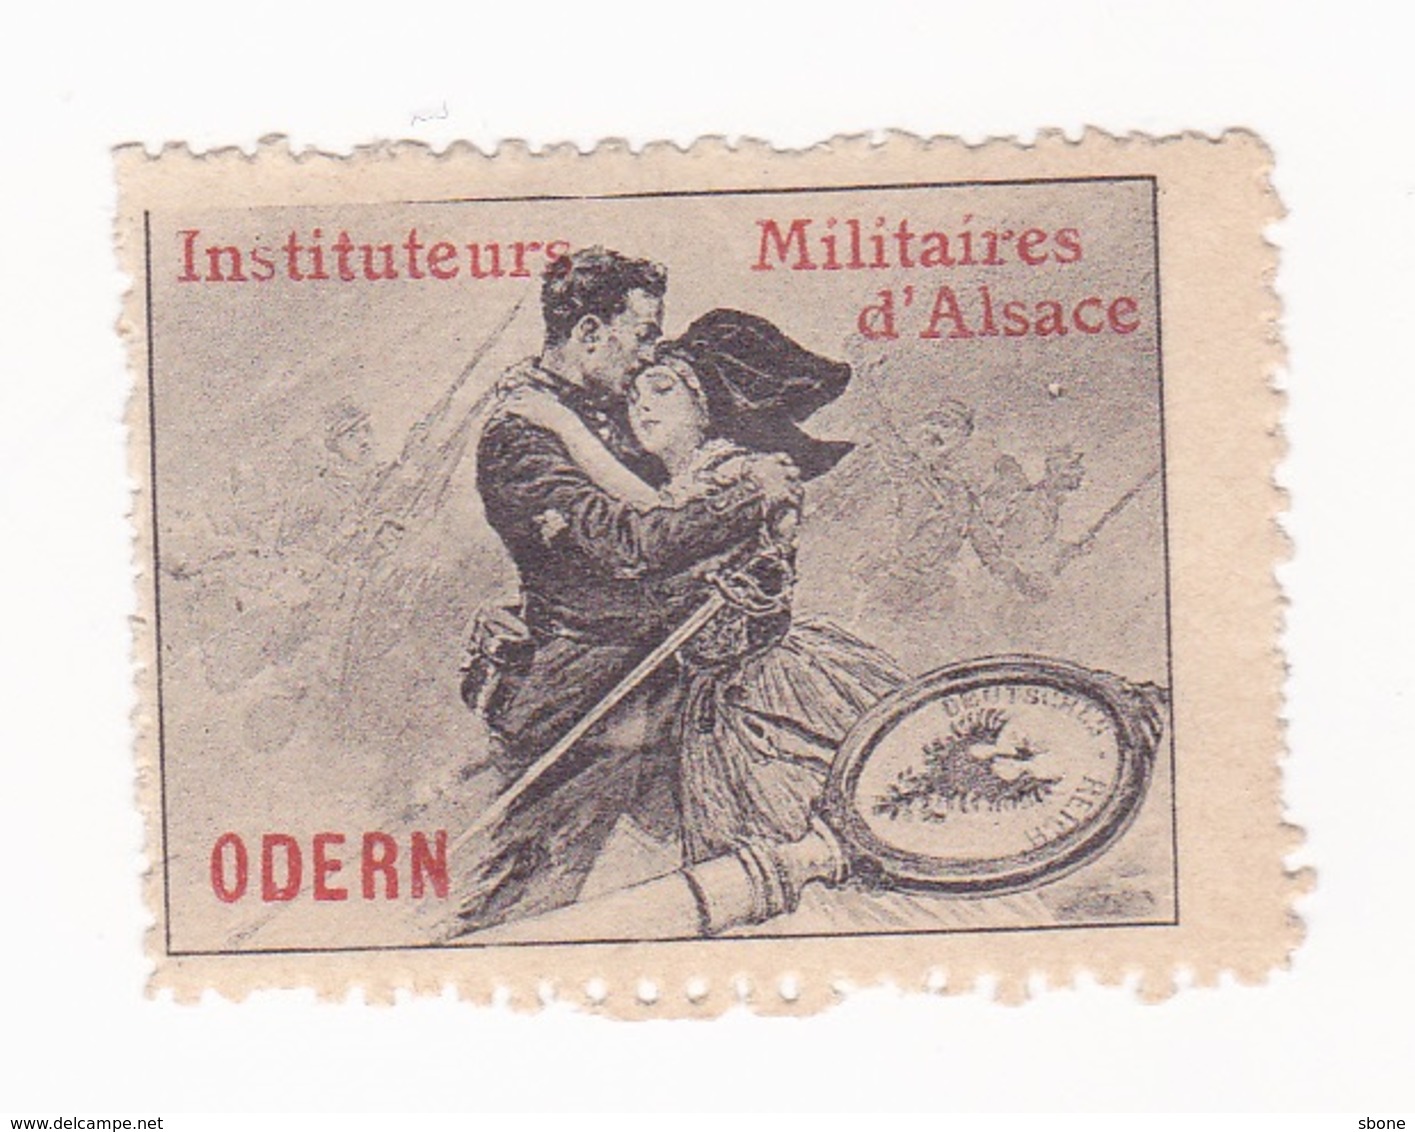 Vignette Militaire Delandre - Instituteurs Militaires D'Alsace - Odern - Vignette Militari